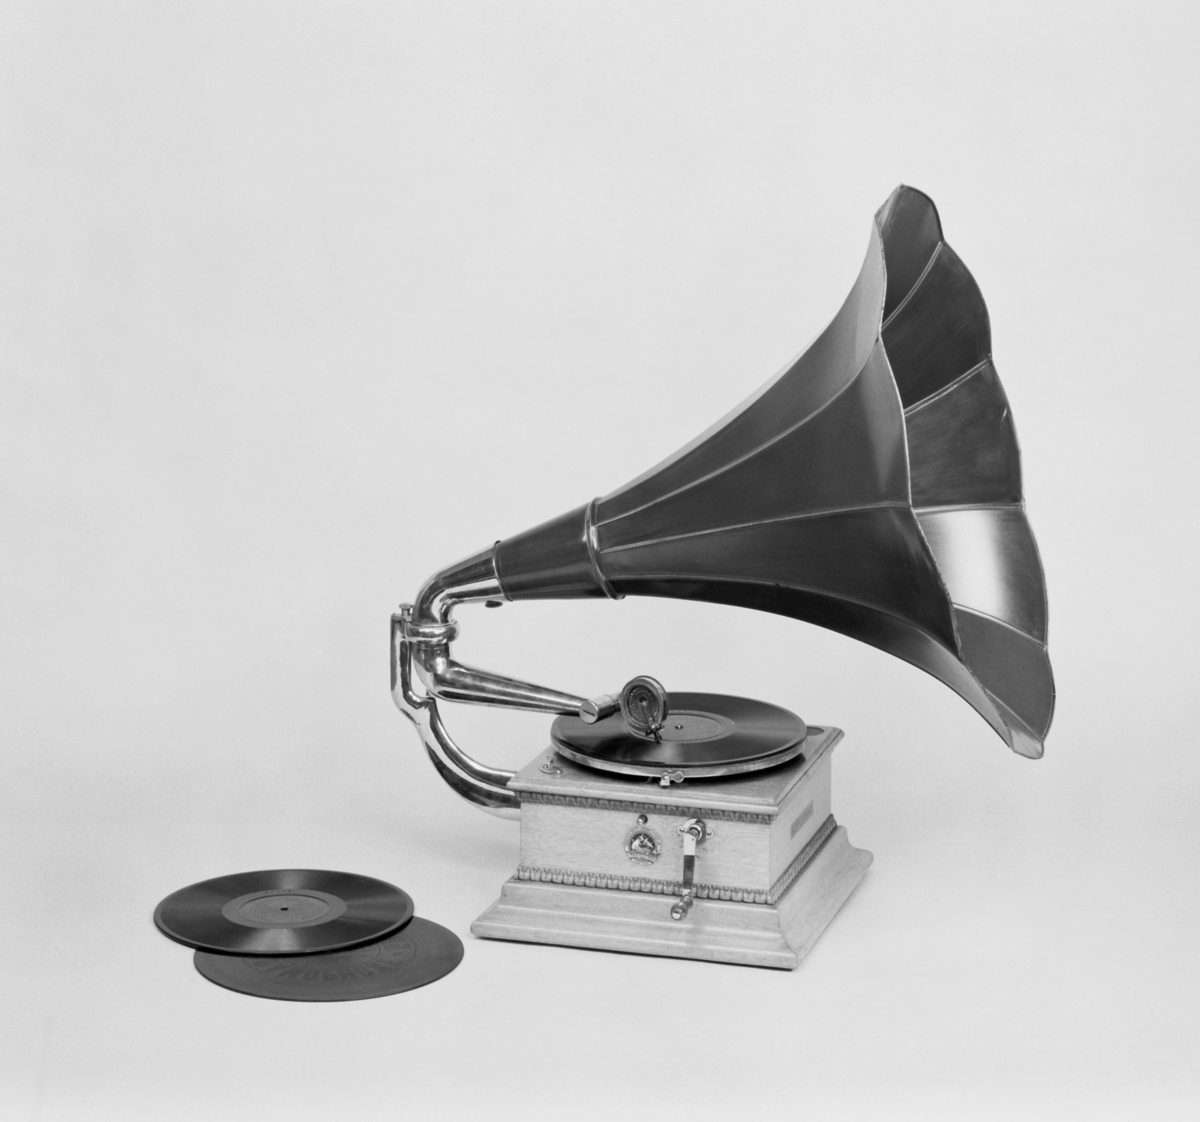 Grammofon, med enkelfjäderverk och jättetratt av lackerad plåt. Höjd: 700 mm med tratt. Lösa delar: Tratt och vev.
Består av
TM14615:1 Grammofon
TM14615.2